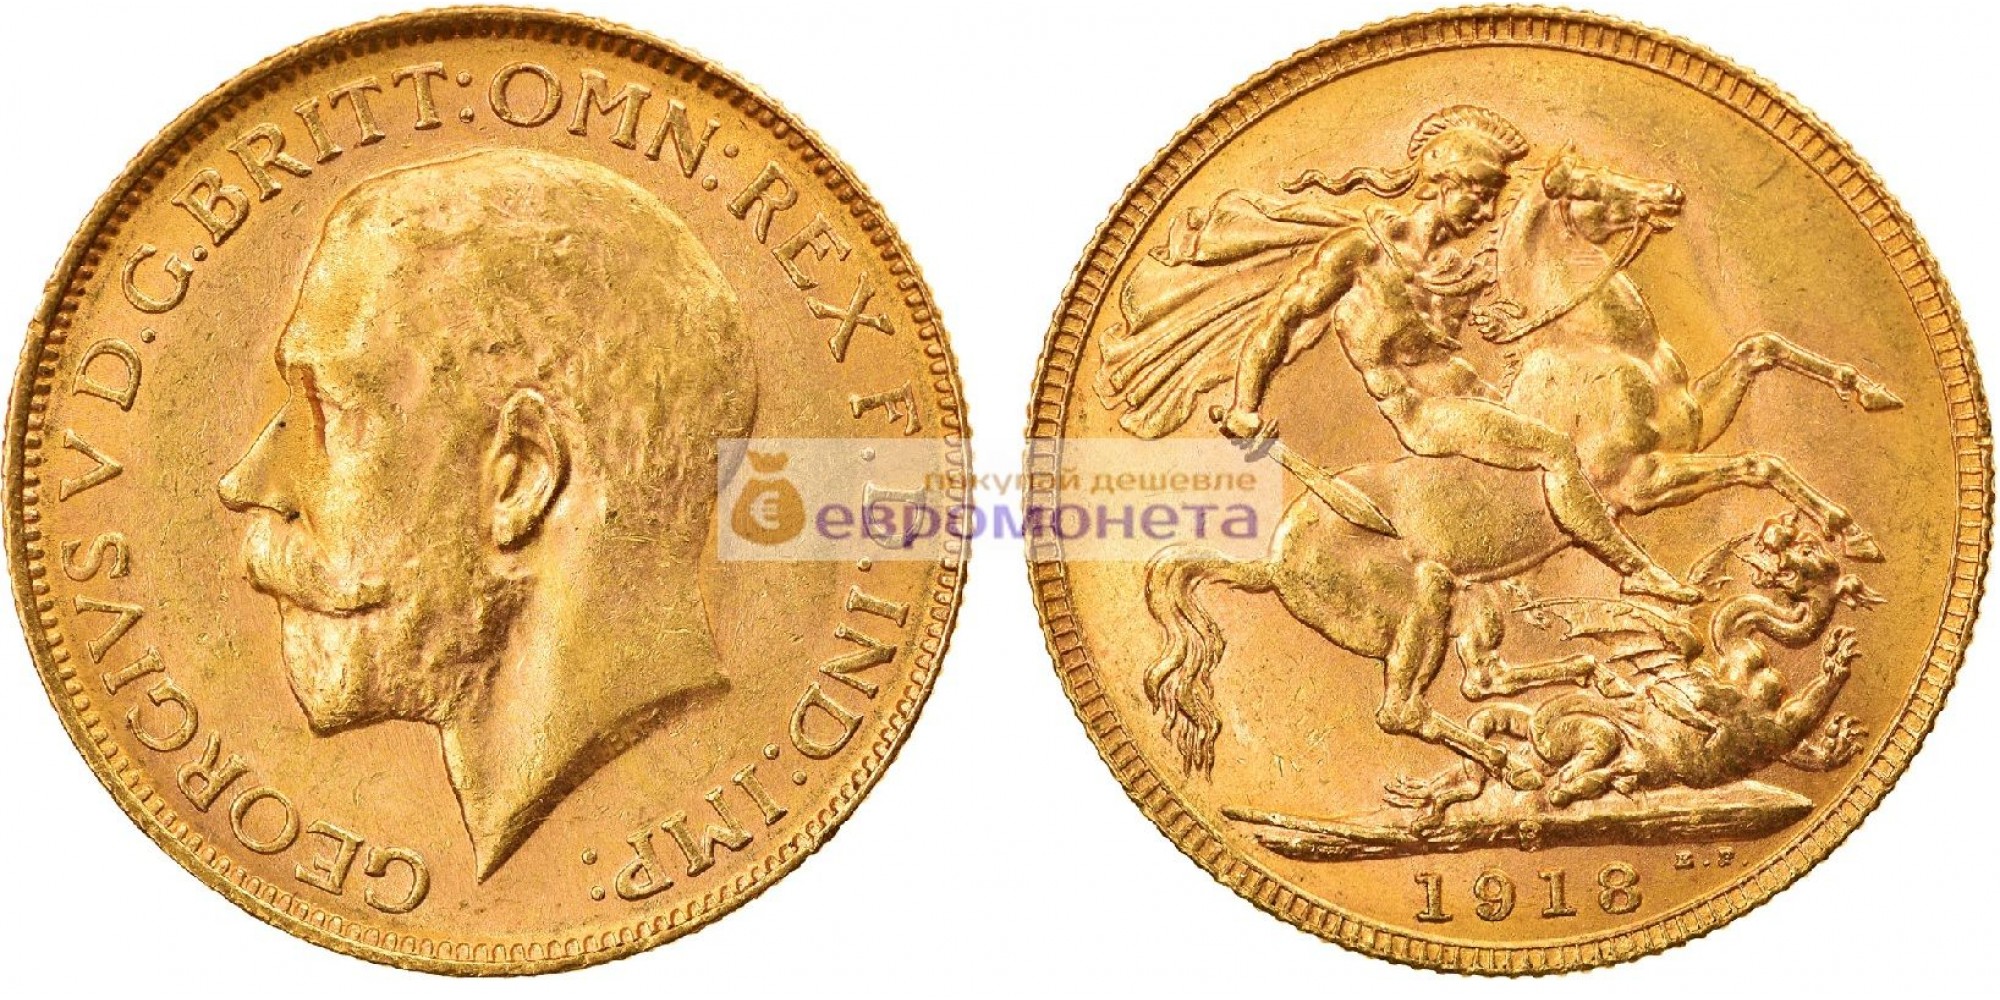 Австралия 1 соверен 1918 год. Король Георг V. Отметка монетного двора "P" - Перт. Золото.